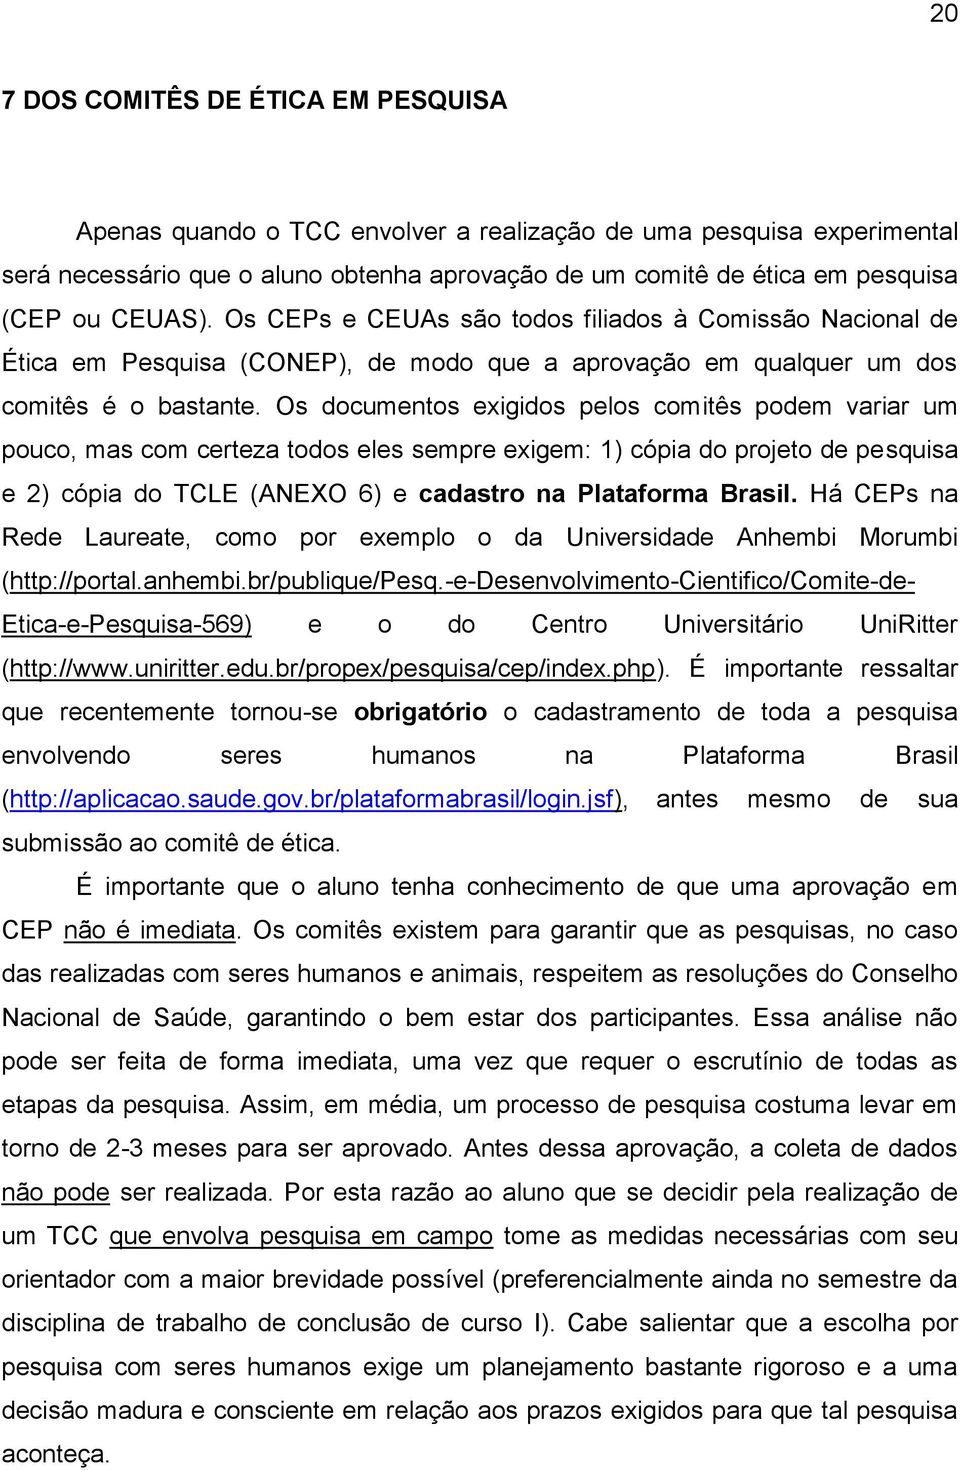 Os documentos exigidos pelos comitês podem variar um pouco, mas com certeza todos eles sempre exigem: 1) cópia do projeto de pesquisa e 2) cópia do TCLE (ANEXO 6) e cadastro na Plataforma Brasil.